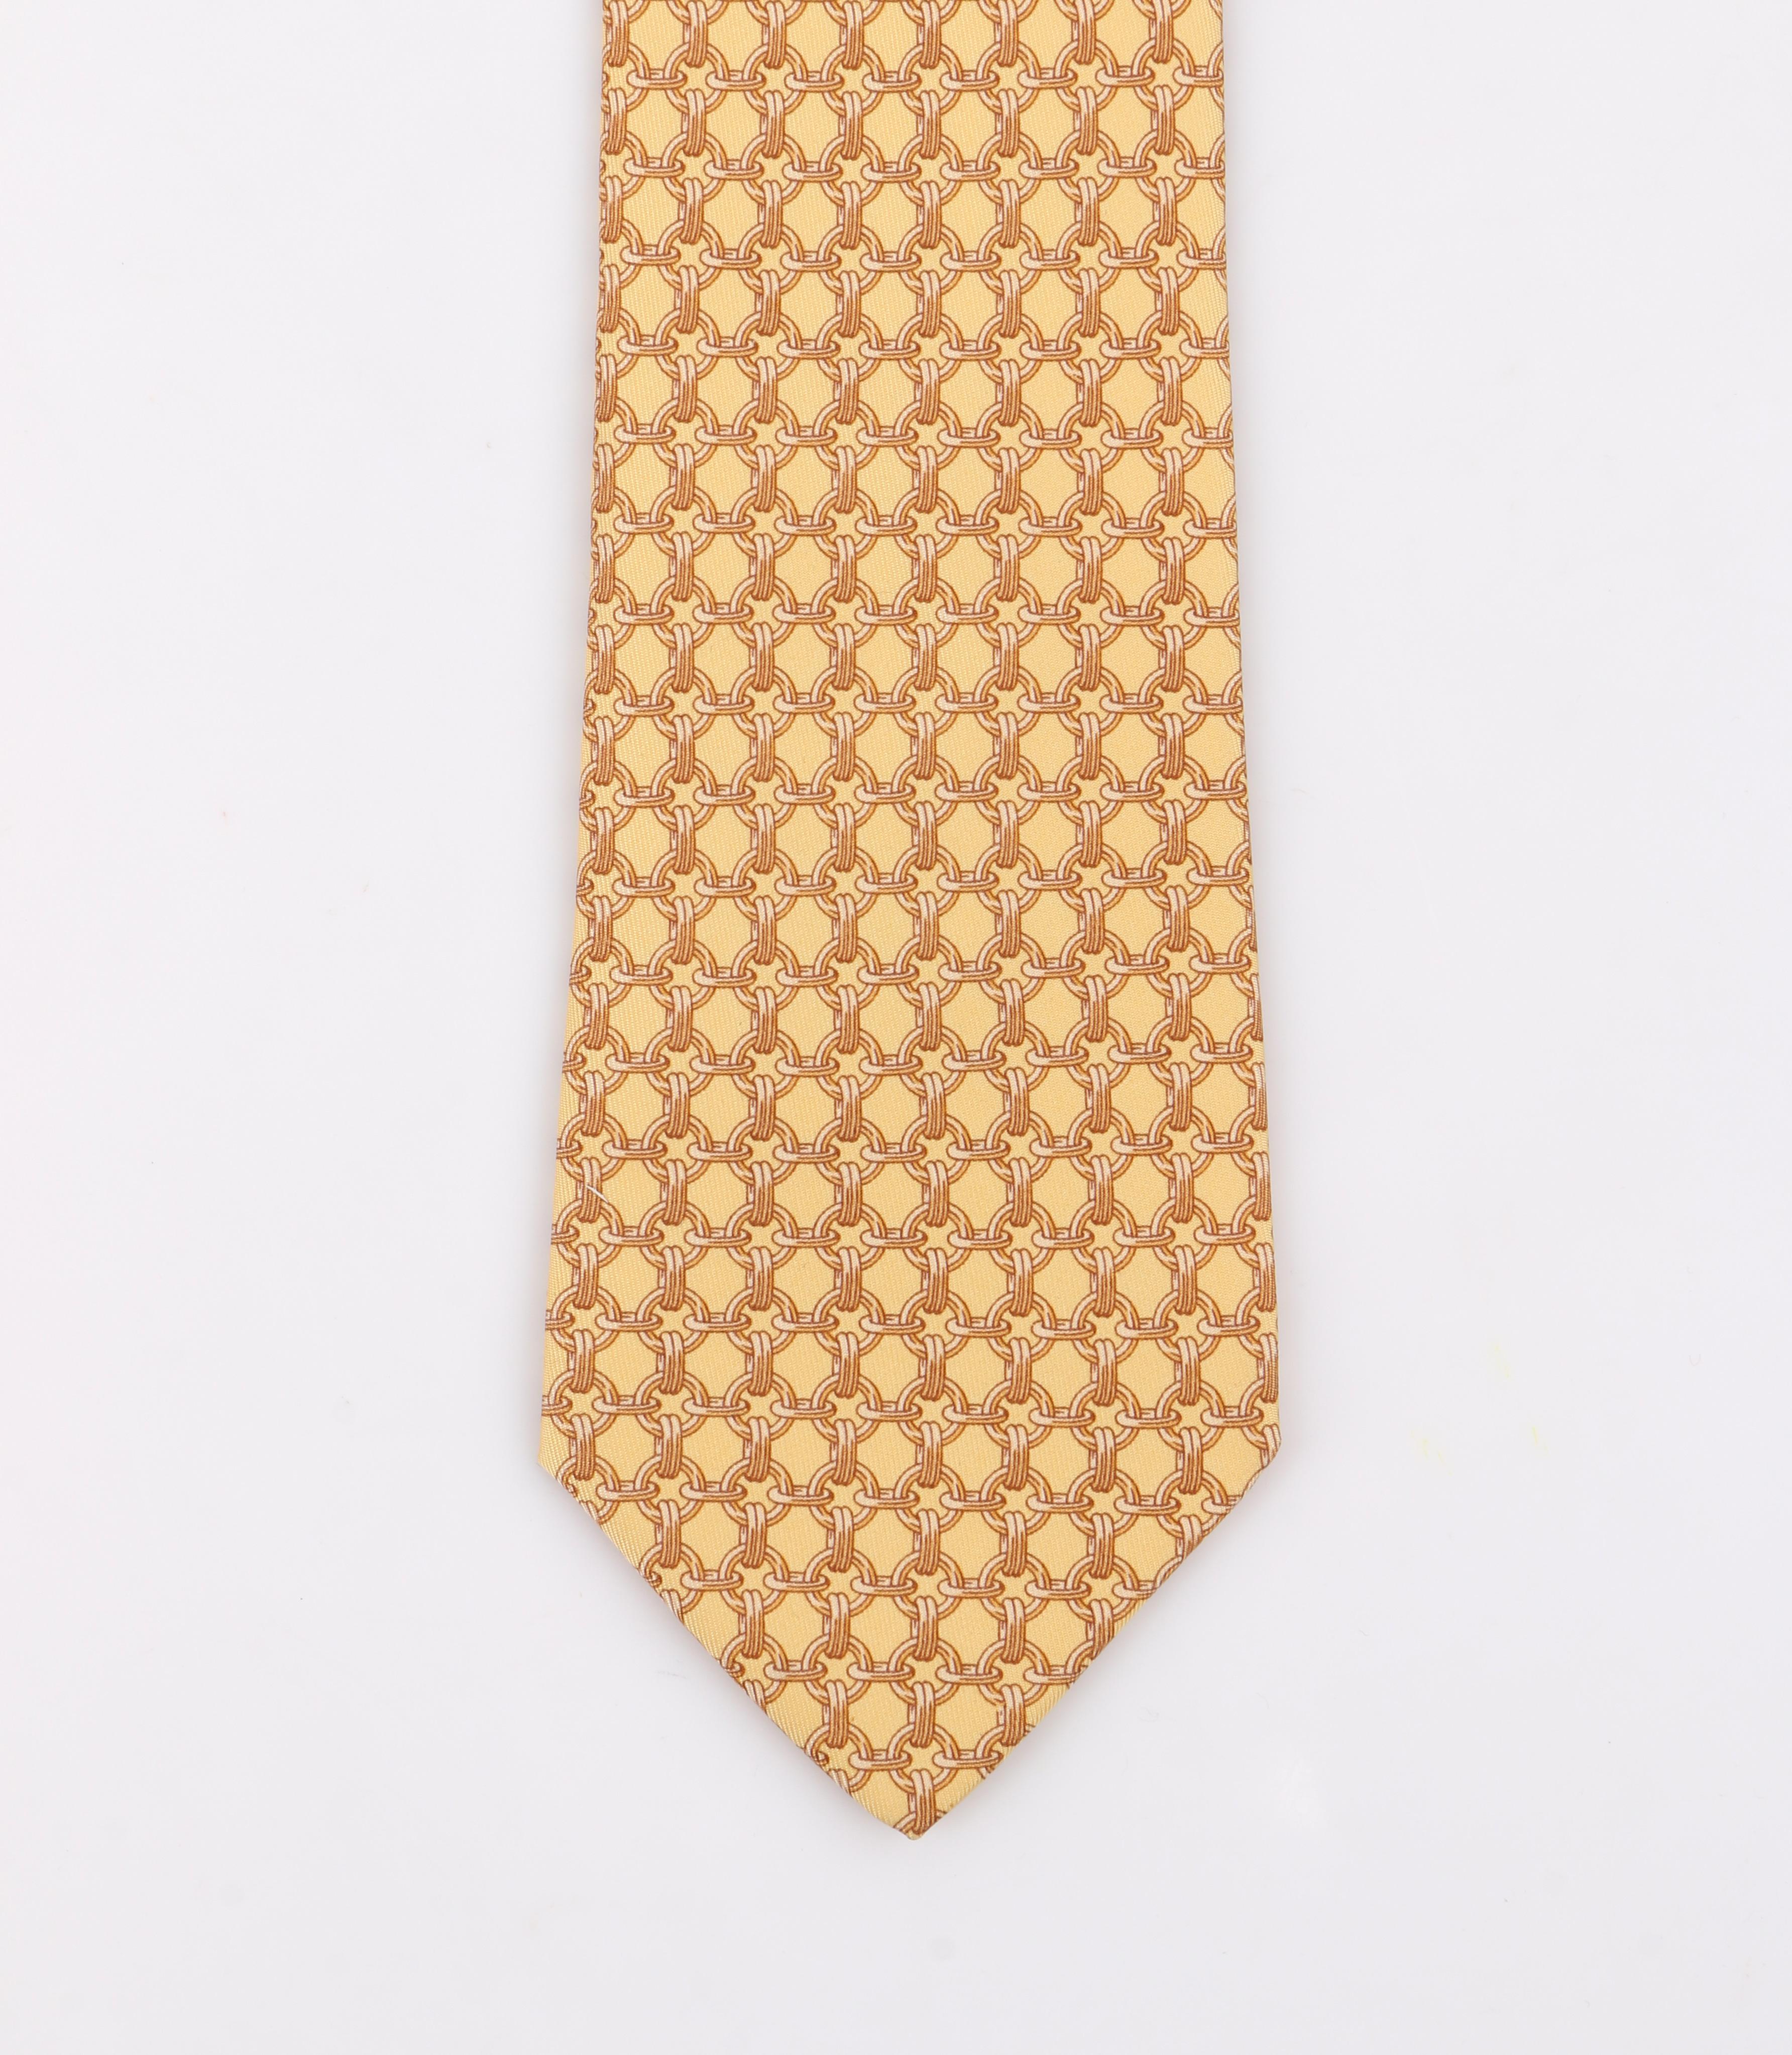 yellow hermes tie